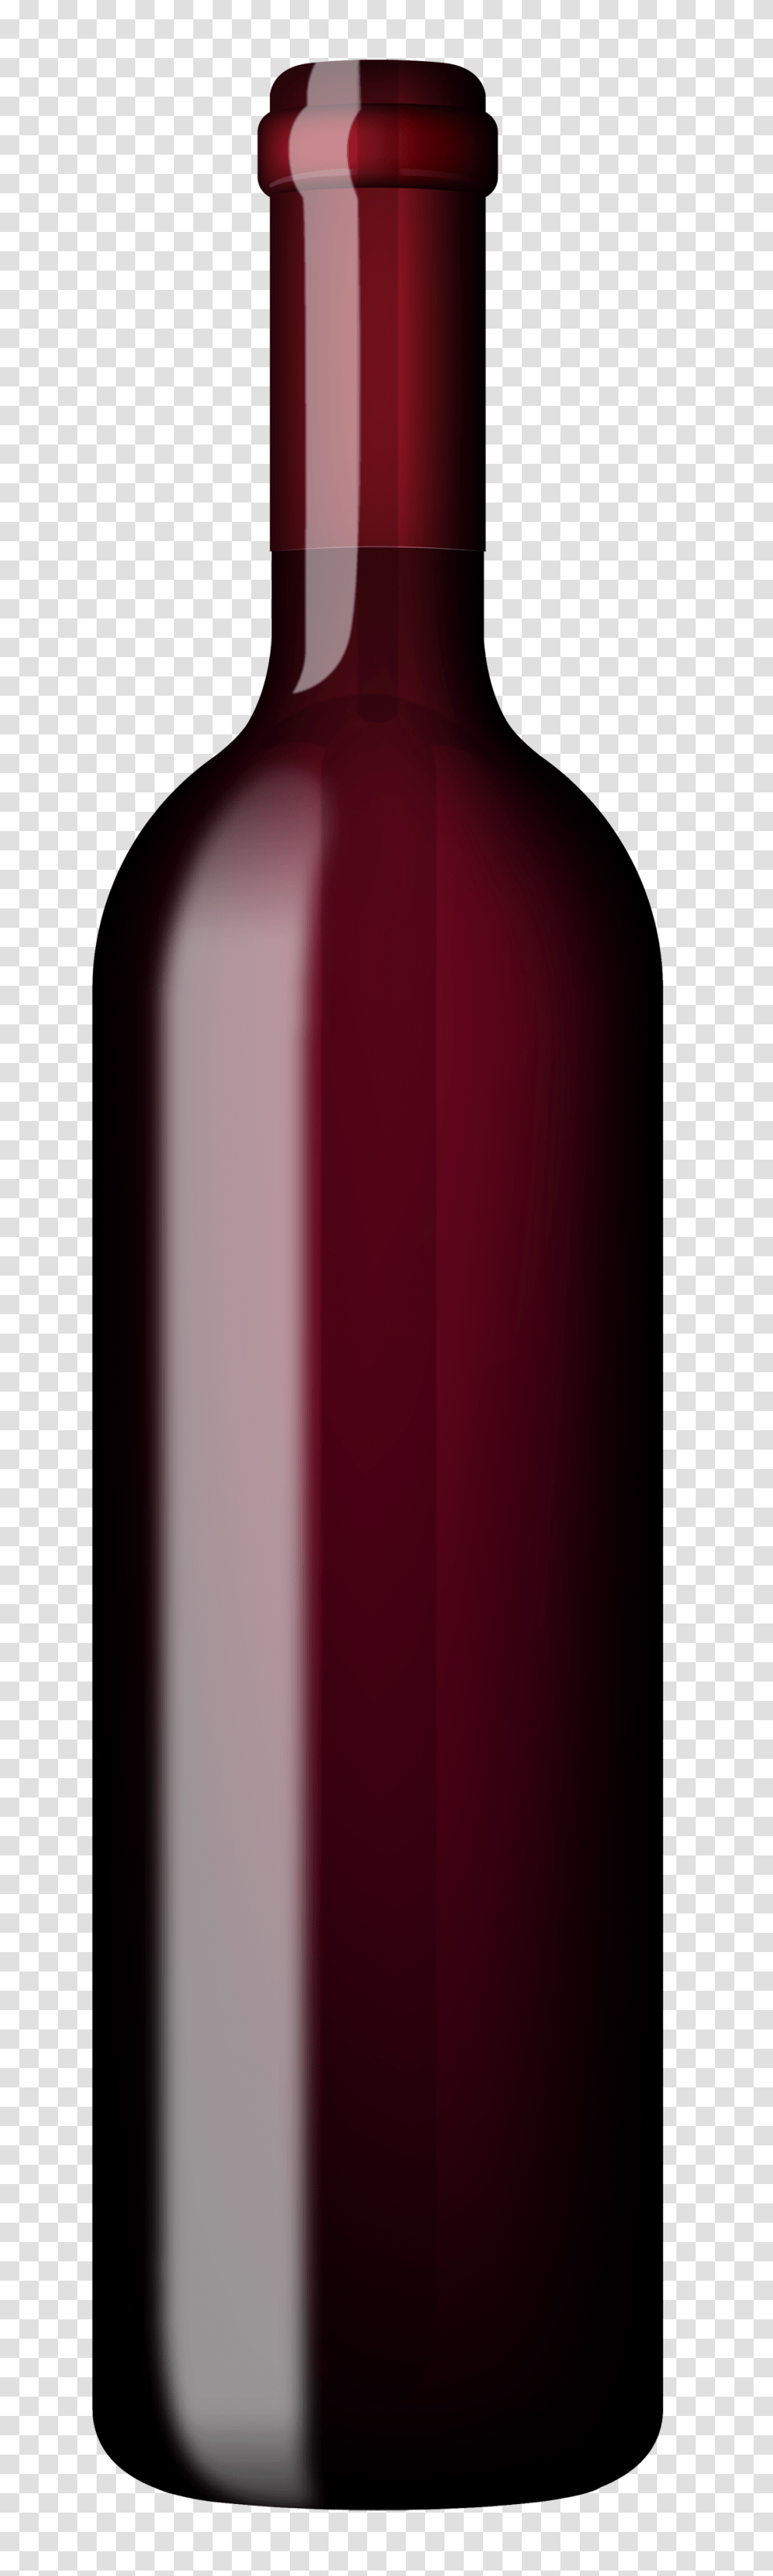 Bottle Clipart, Red Wine, Alcohol, Beverage, Drink Transparent Png